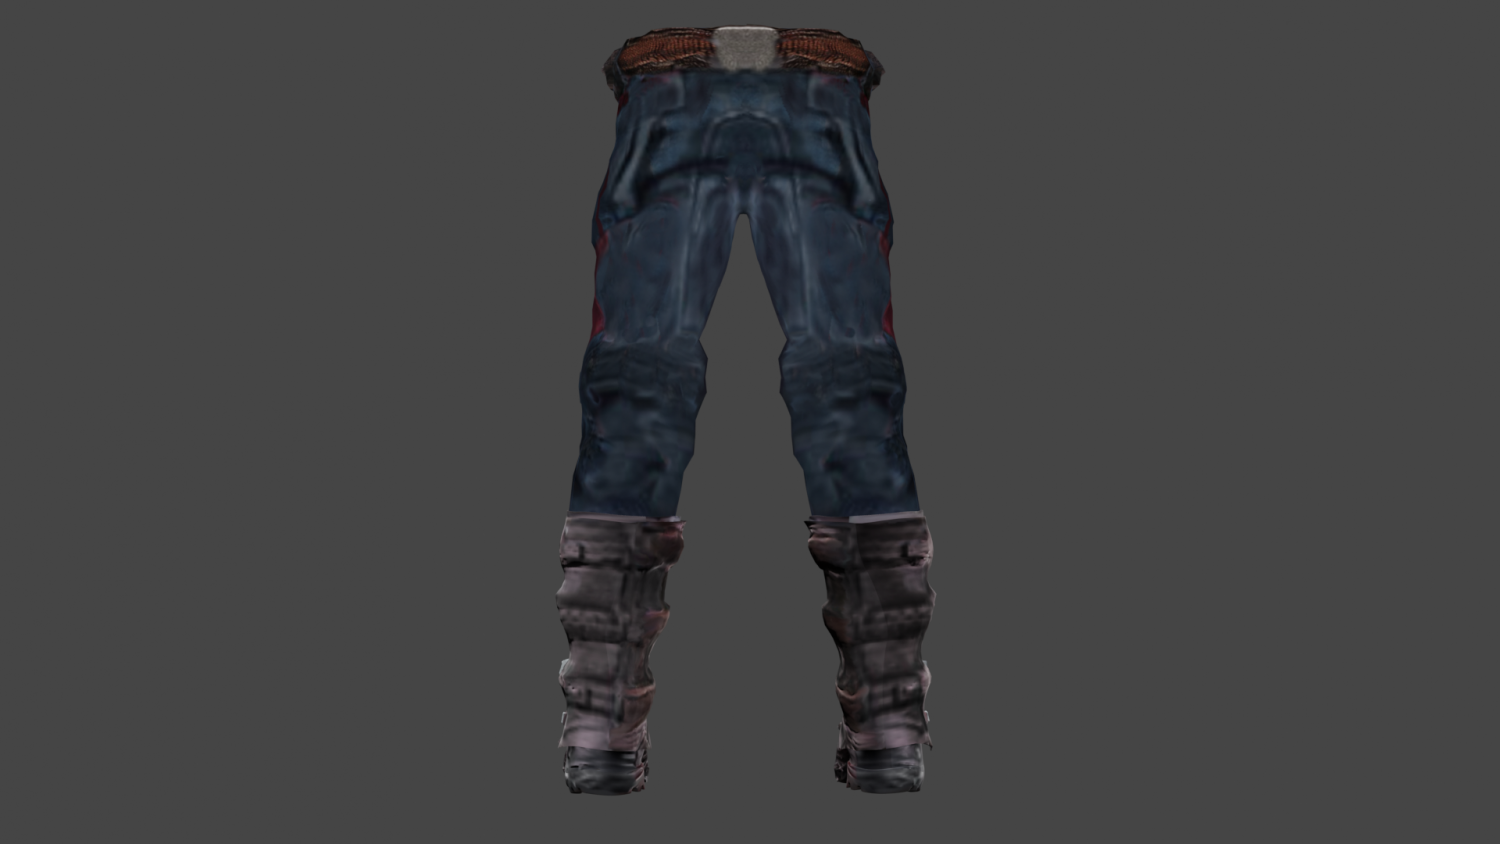 Wood armor pants rust фото 108